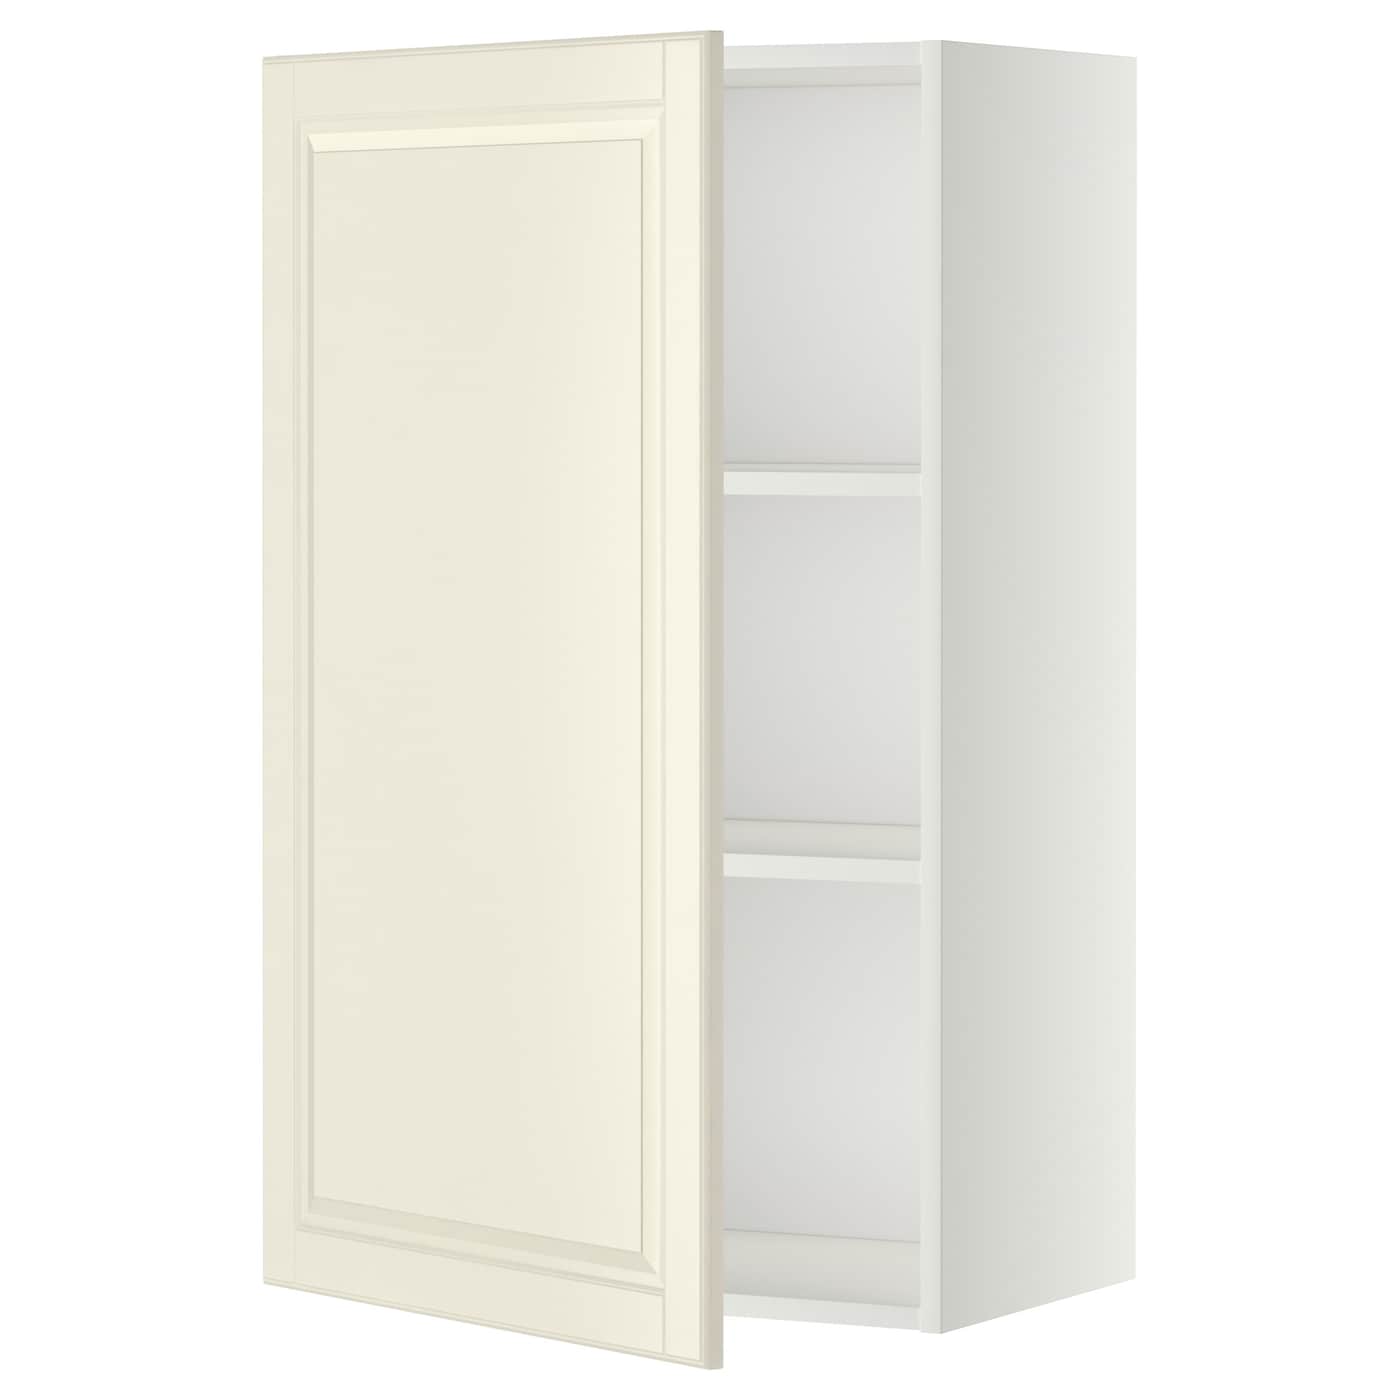 Навесной шкаф с полкой - METOD IKEA/ МЕТОД ИКЕА, 60х100 см, белый/кремовый